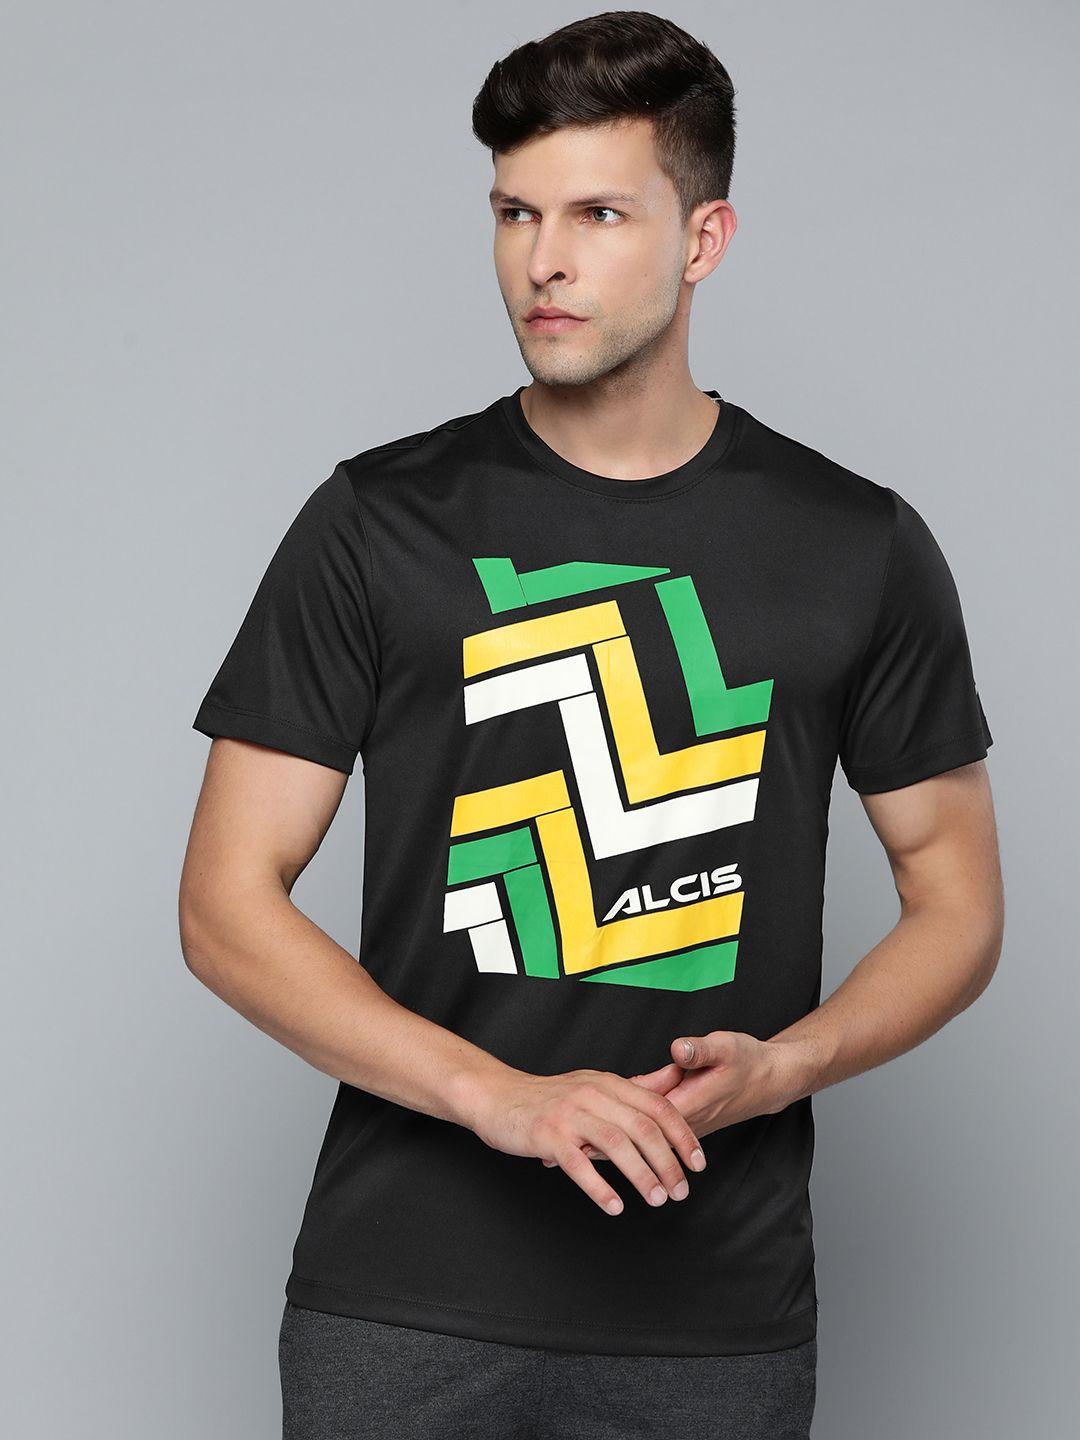 alcis men black & yellow printed slim fit t-shirt